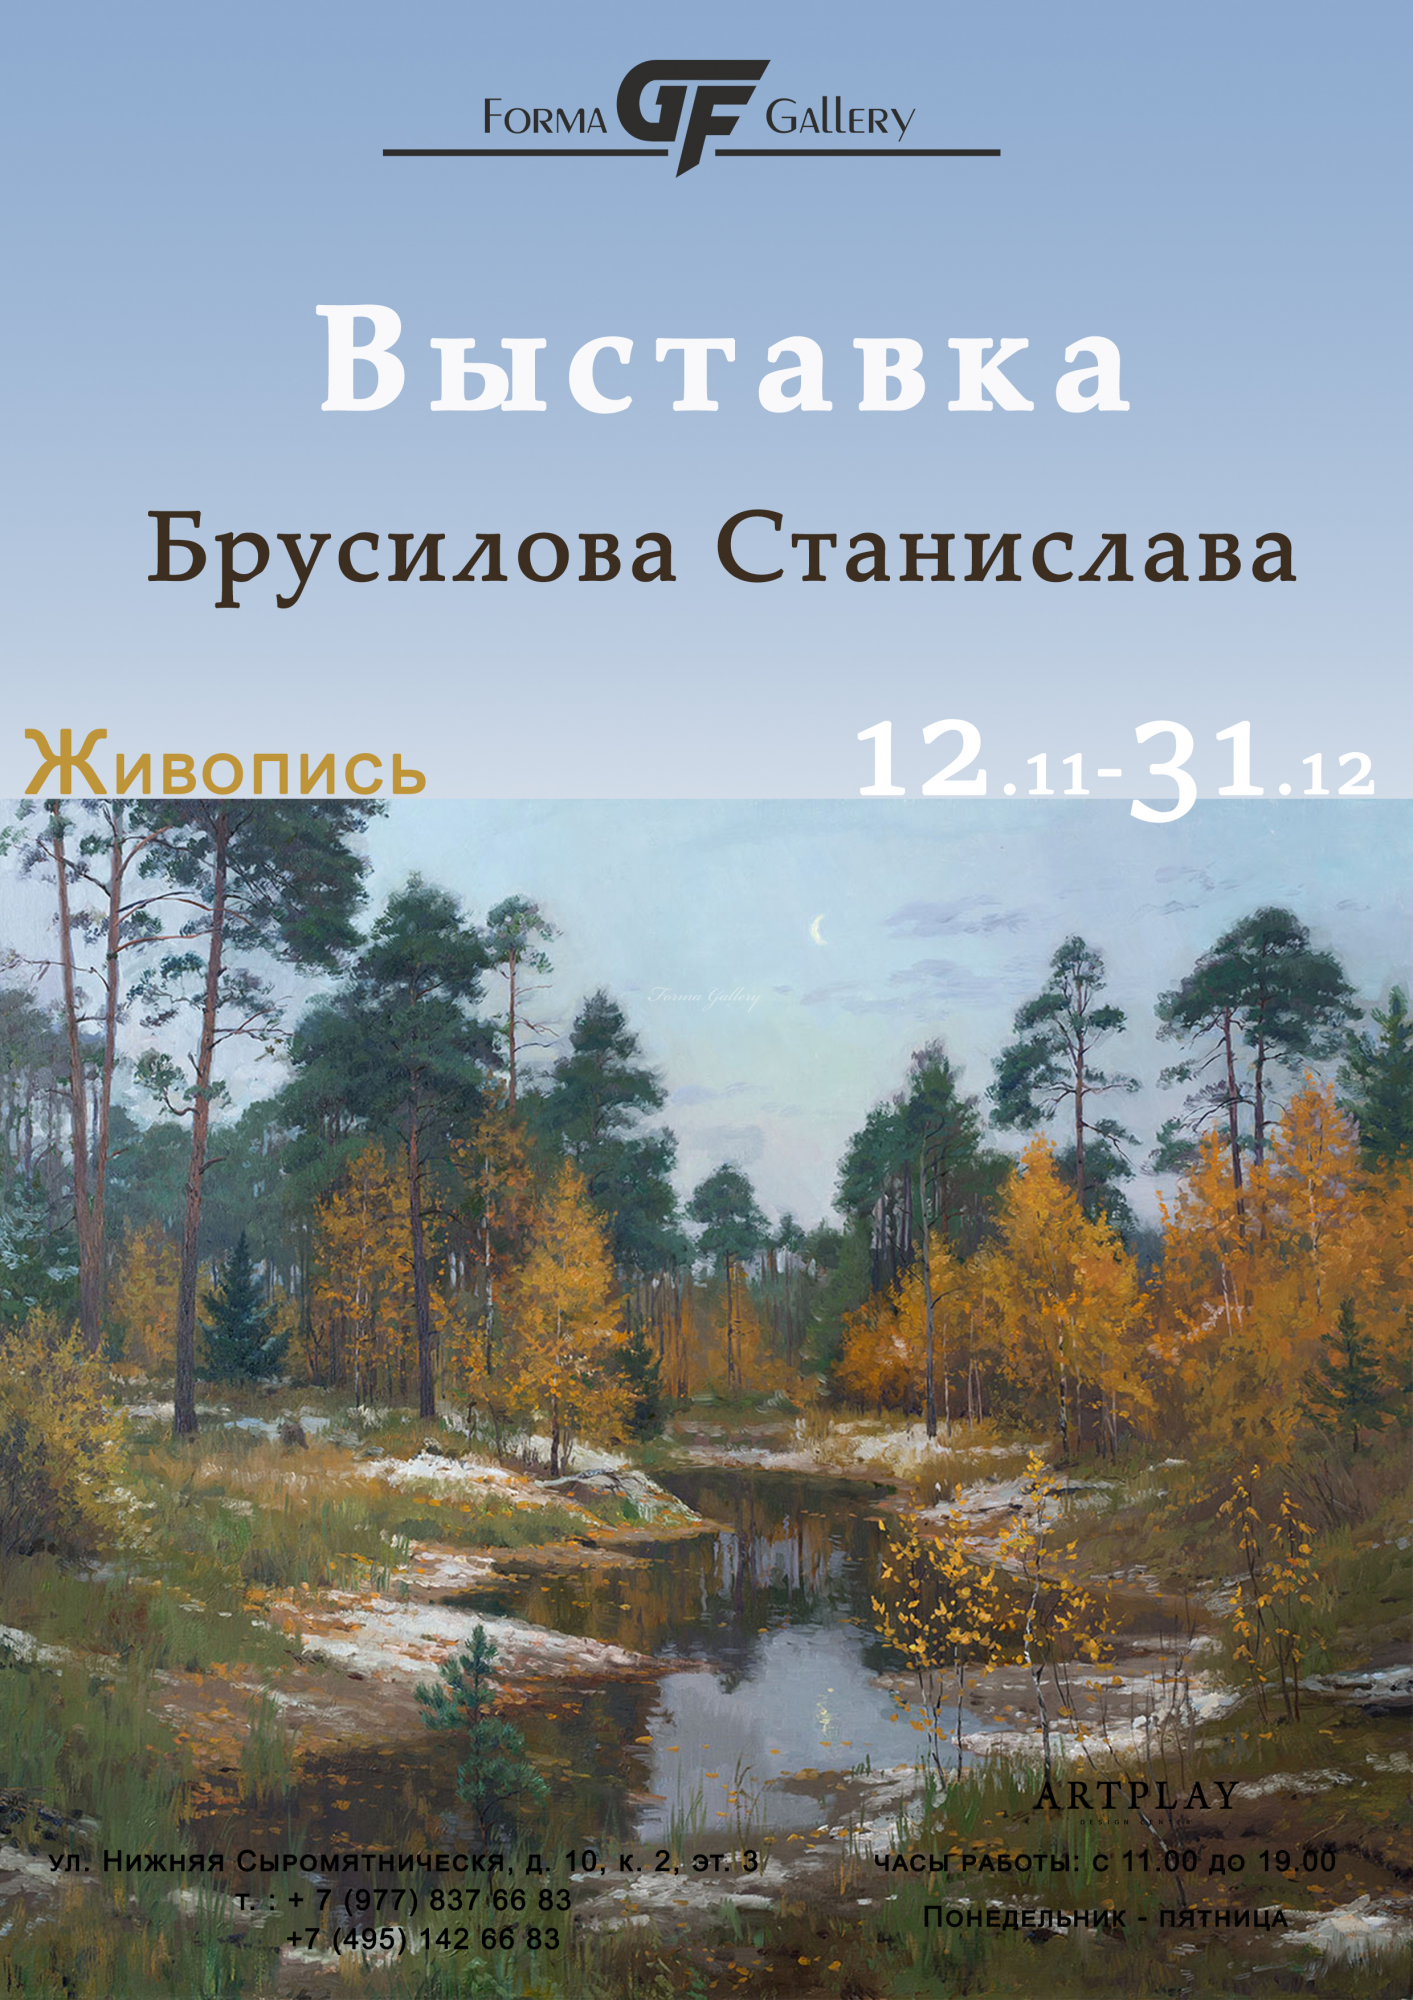 Выставка Брусилова Станислава